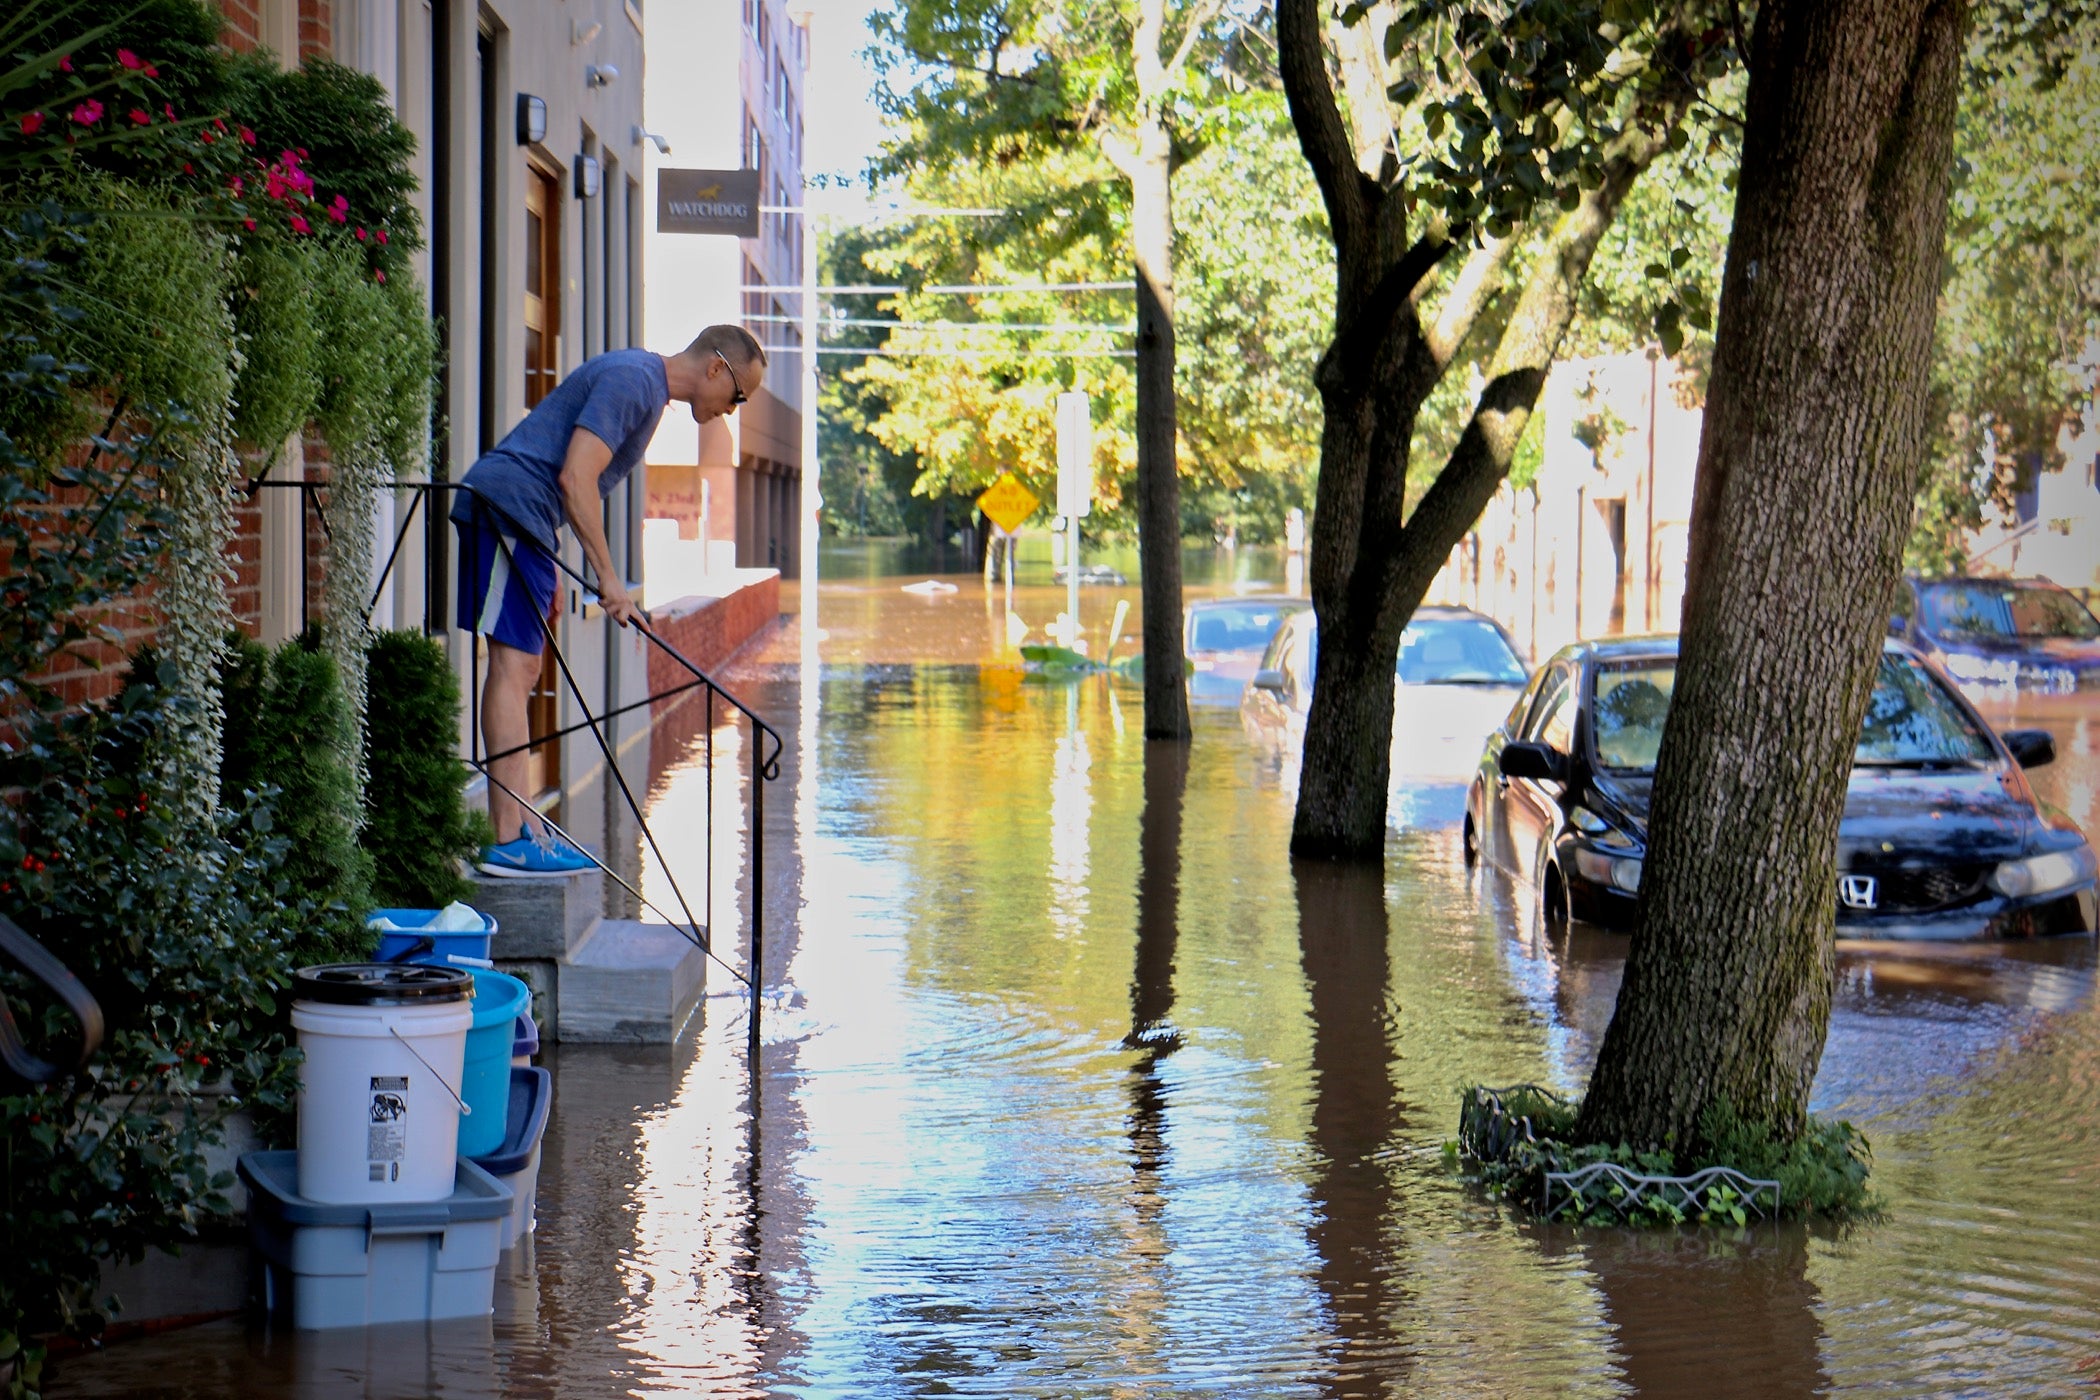 https://whyy.org/wp-content/uploads/2021/09/2021-09-02-e-lee-philadelphia-logan-square-23rd-street-flooding-porch.jpg